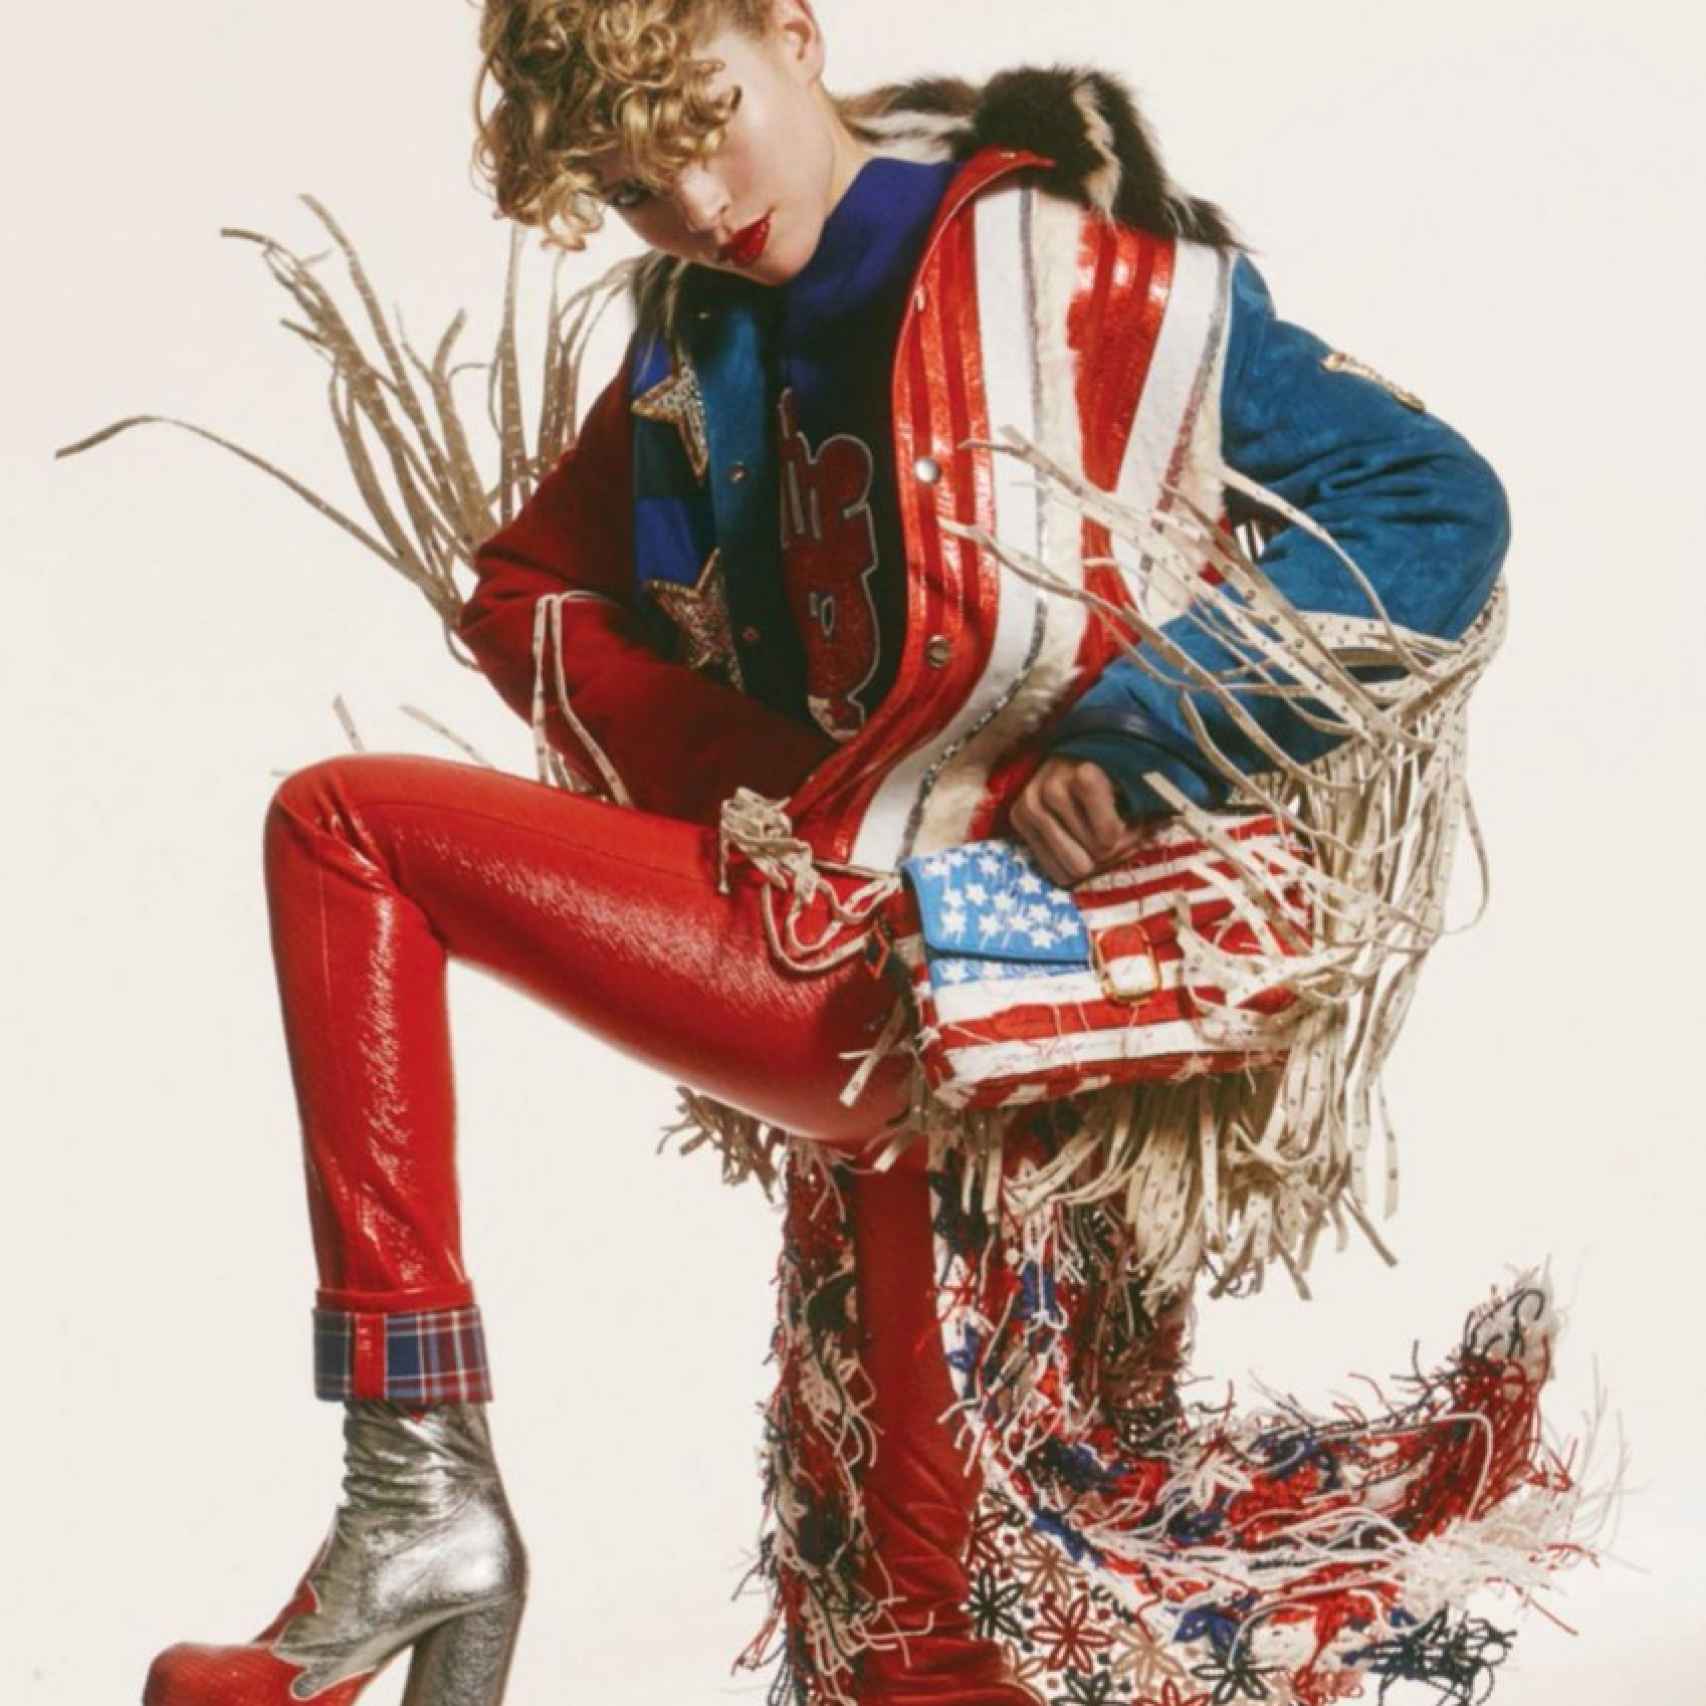 Marc Jacobs propone, en su colección Primavera-Verano 2016, distintas mezclas de los colores rojo, azul y blanco.